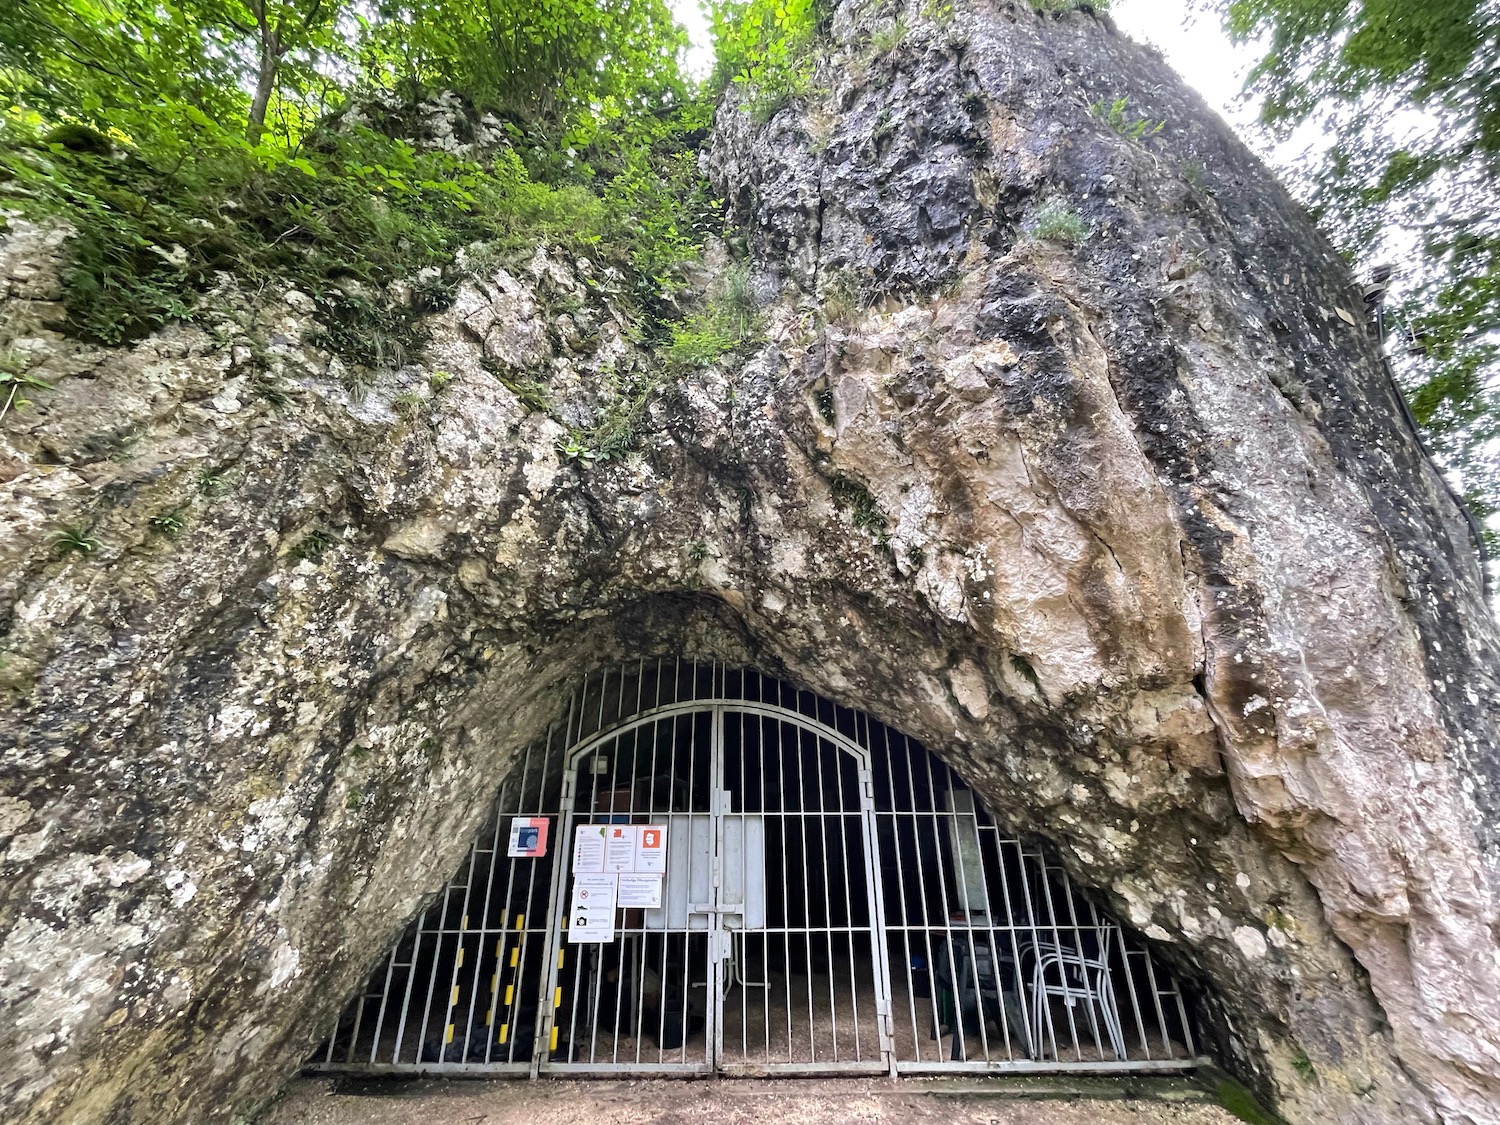 a metal gate in a cave